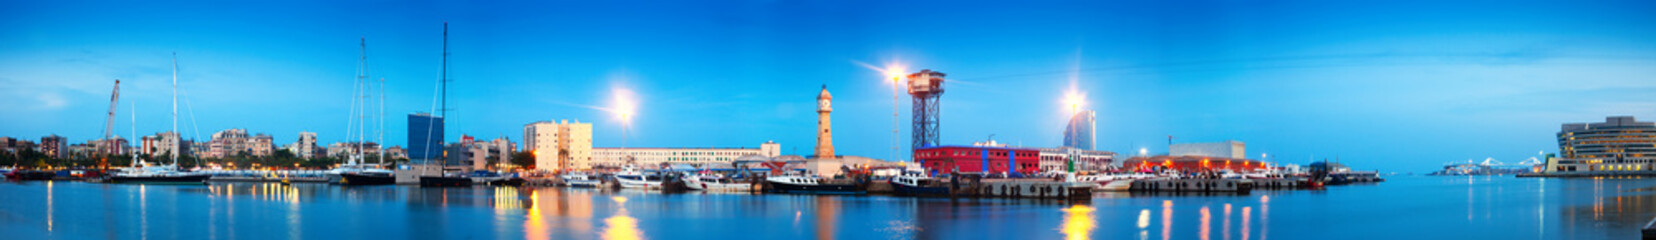 Fototapeta wieża widok łódź hiszpania